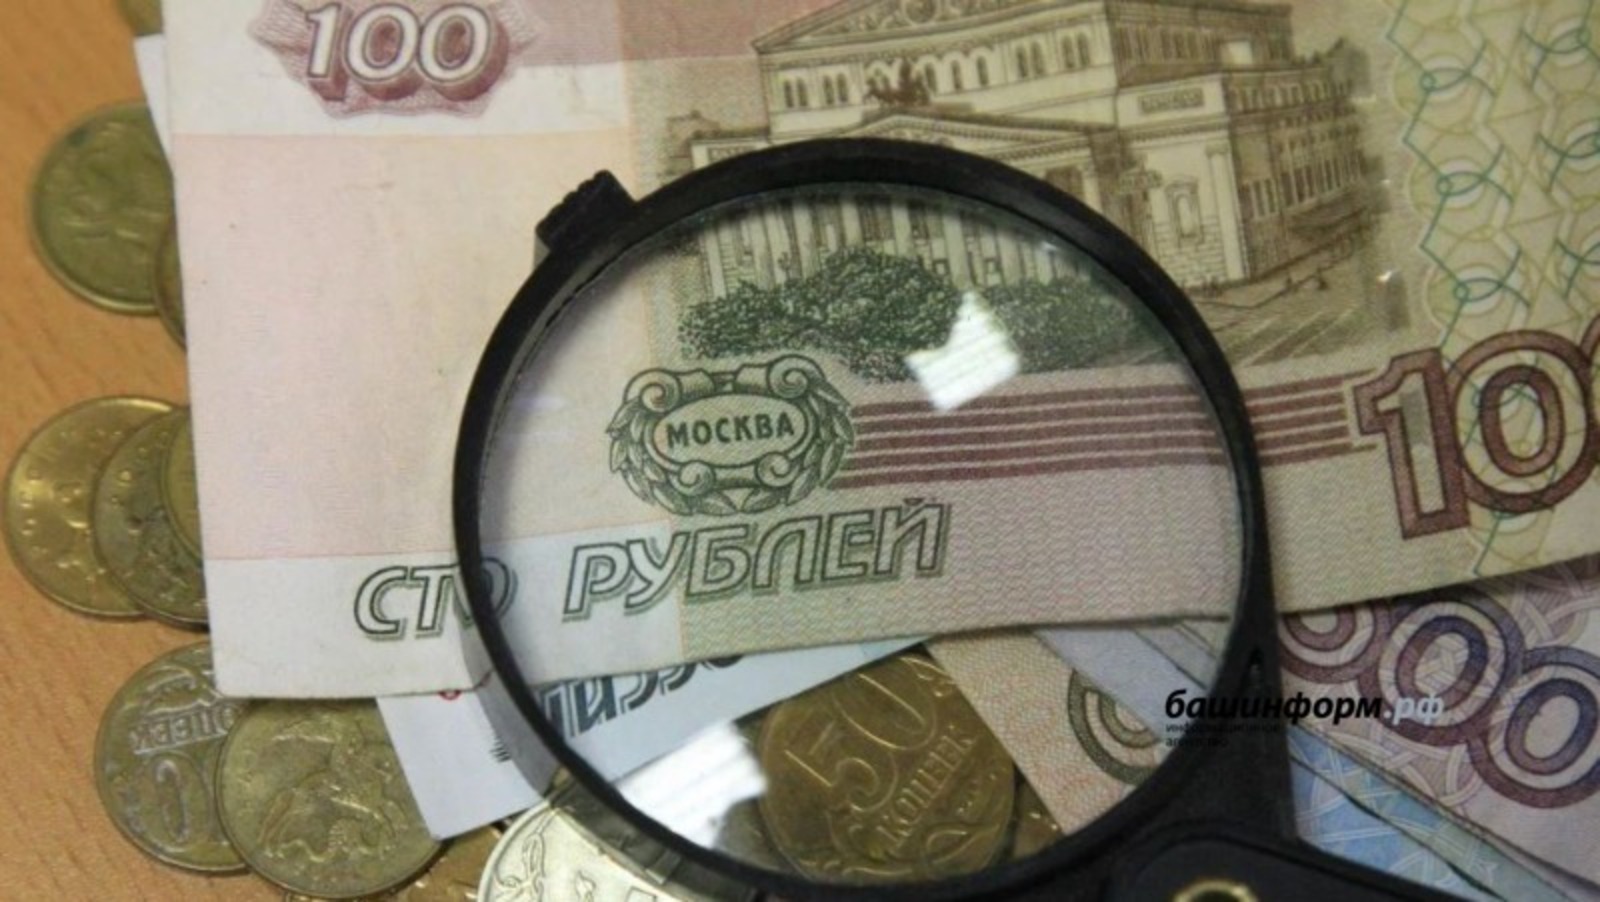 Скоро появится новая банкнота в 100 рублей